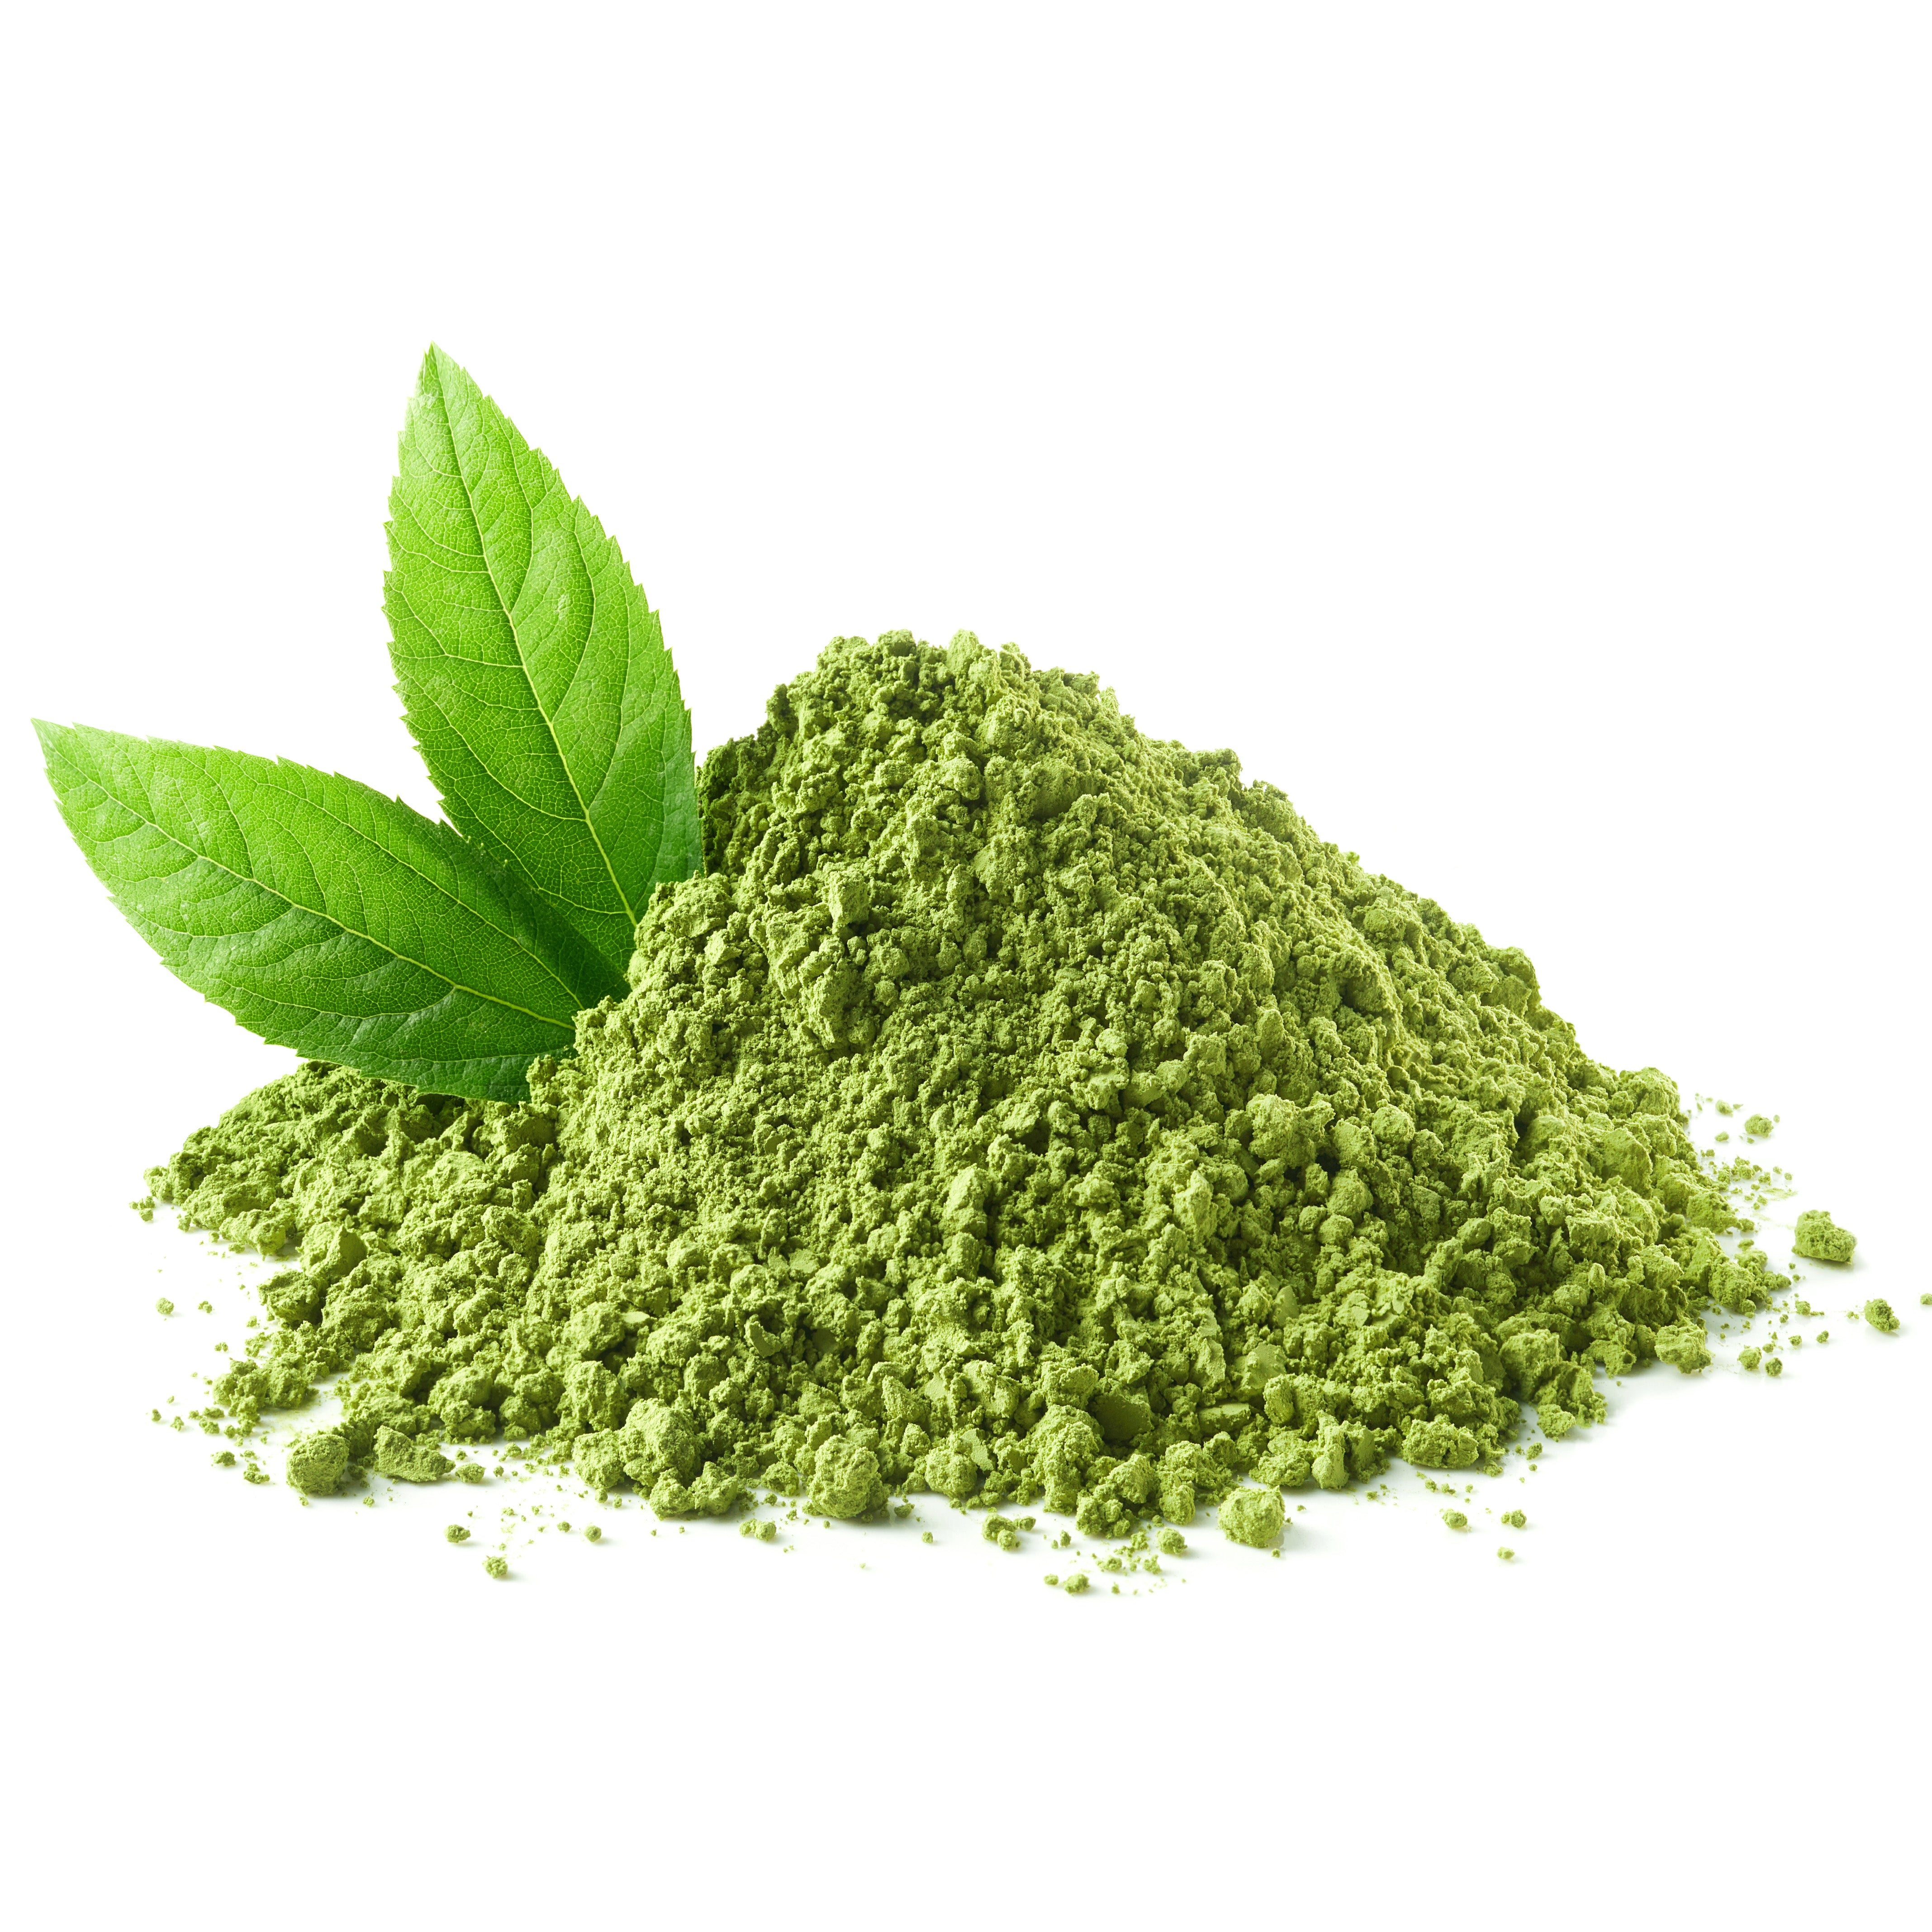 Frunze de ceai verde - Extract de ceai verde sau ulei de camelia